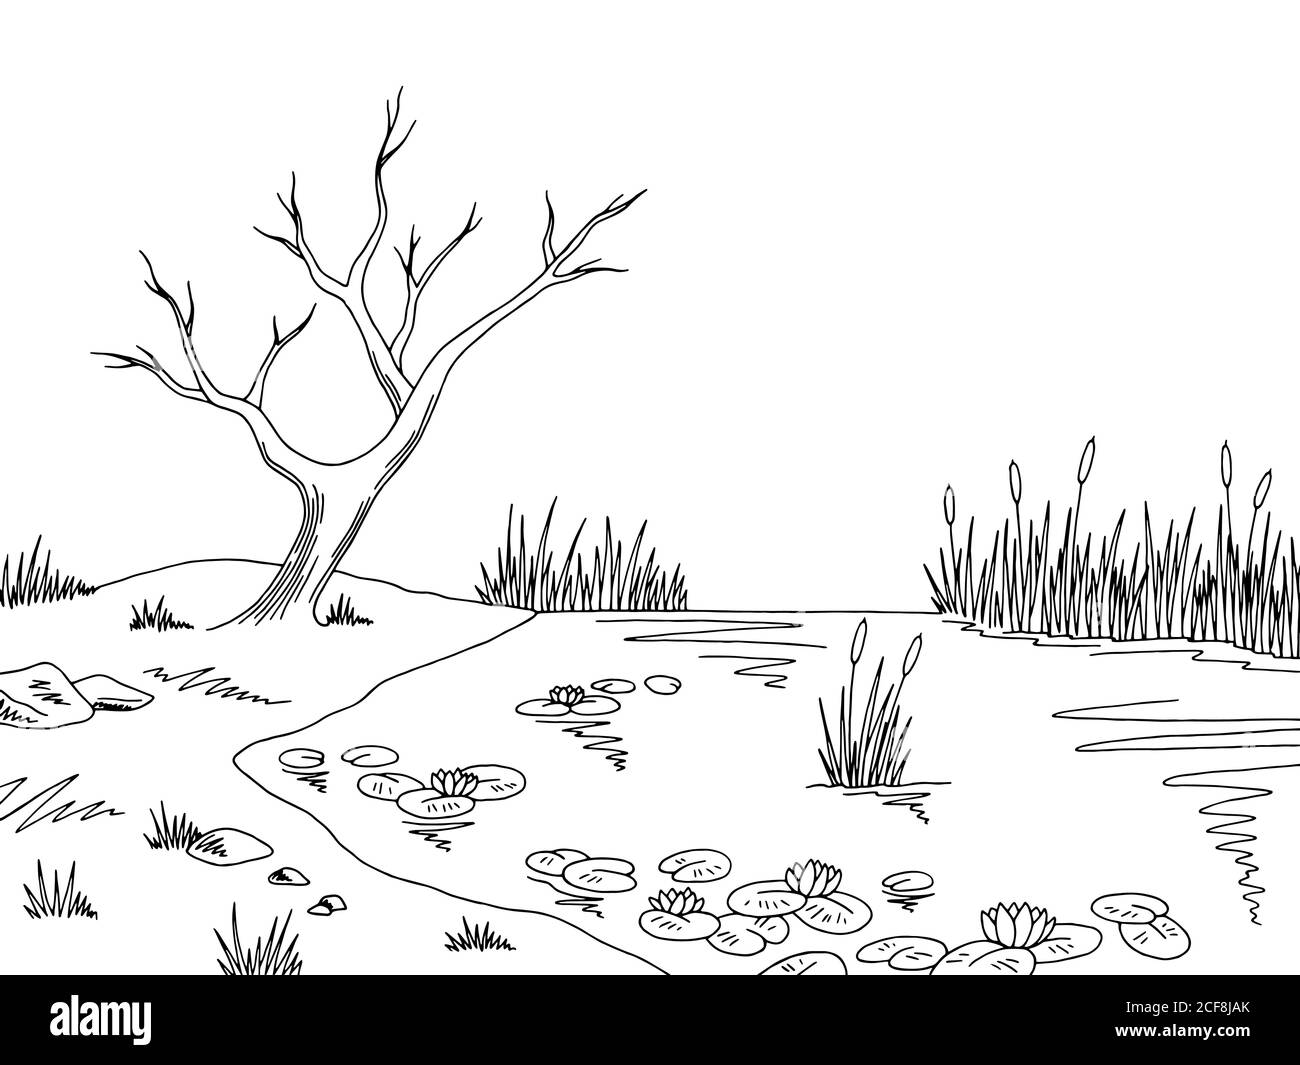 Bog swamp graphic black white landscape sketch illustration vector Stock Vector